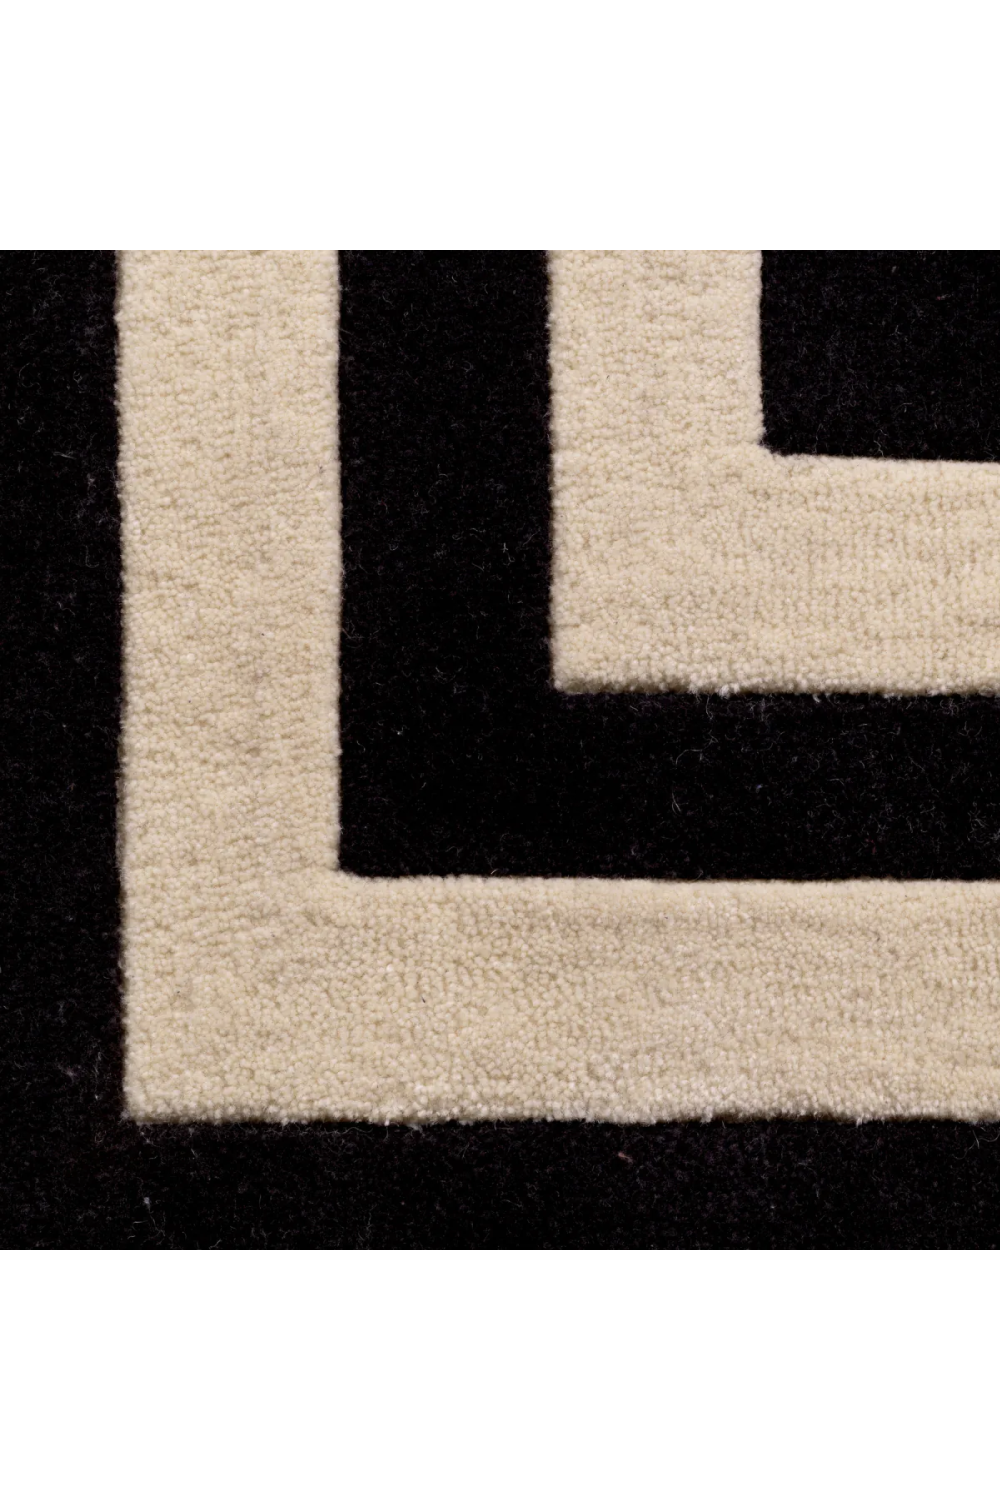 Black Carpet | Eichholtz Celeste - (10x13) | Oroa.com